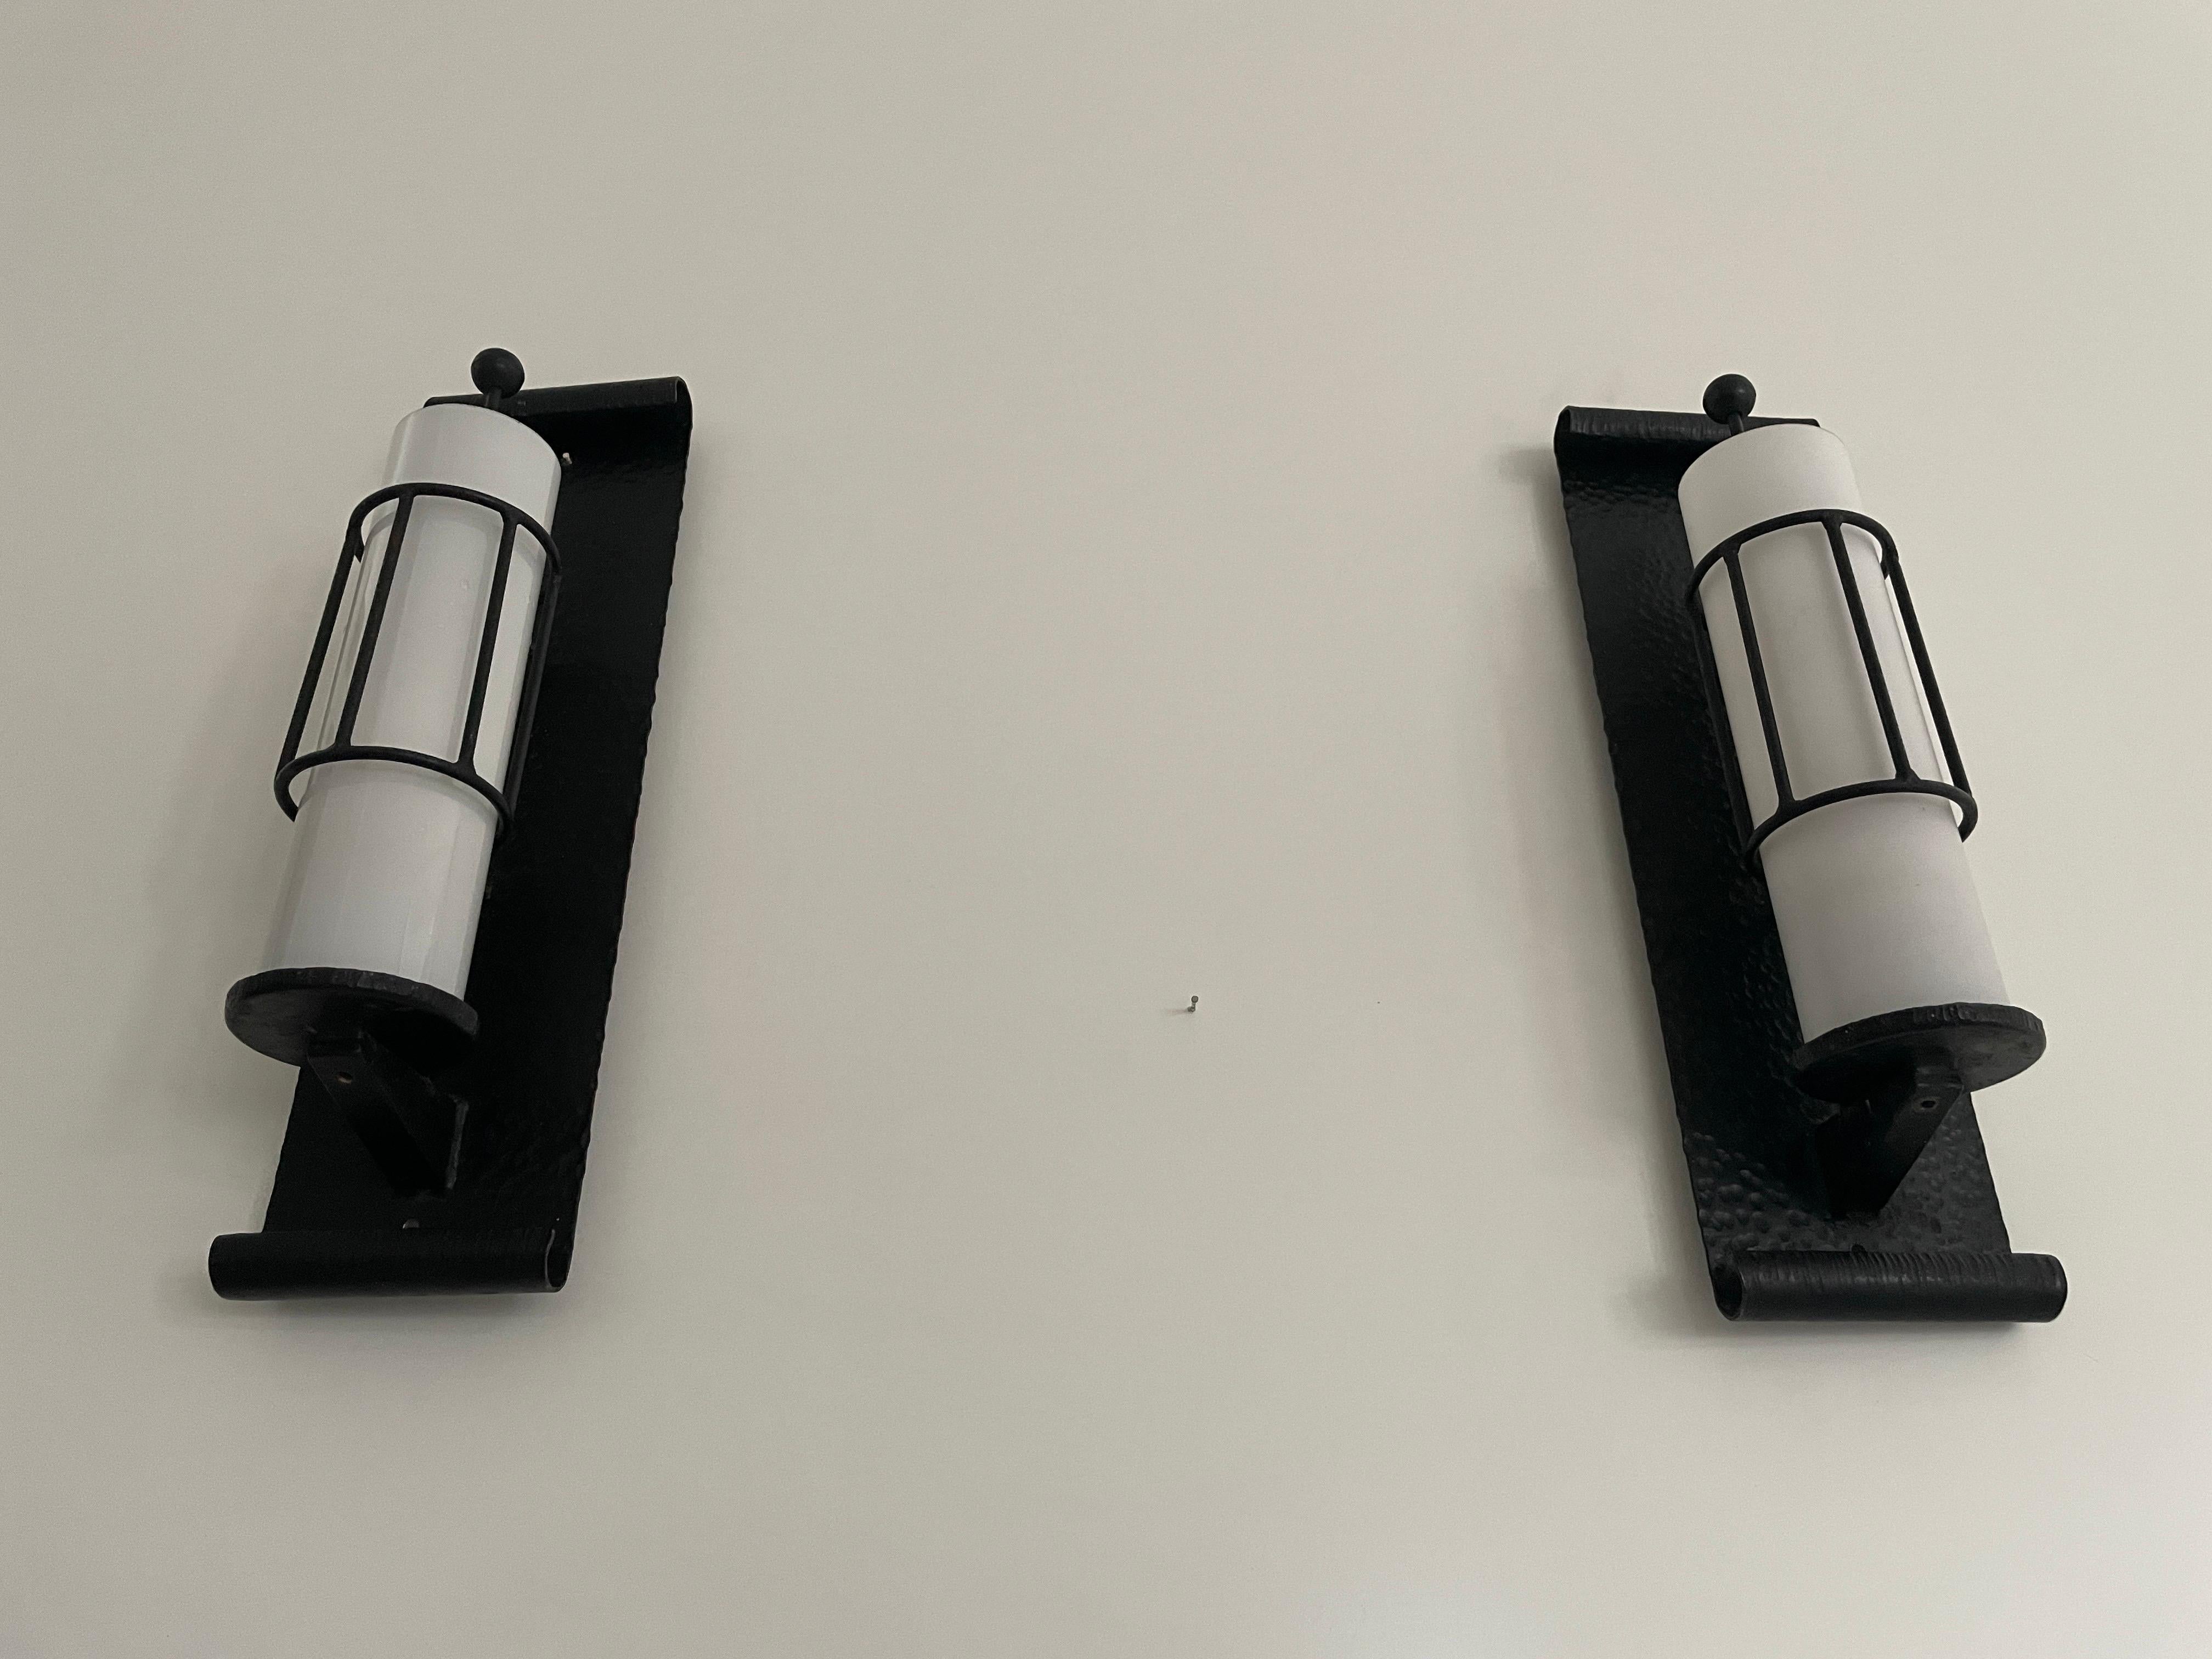 Weißes zylindrisches Glasdesign mit schwarzer schmiedeeiserner Rückwand Paar Kino-Leuchten, 1960er Jahre, Deutschland#

Der Lampenschirm ist in sehr gutem Vintage-Zustand.
Kein Riss, kein fehlendes Stück.

Diese Lampe funktioniert mit einer